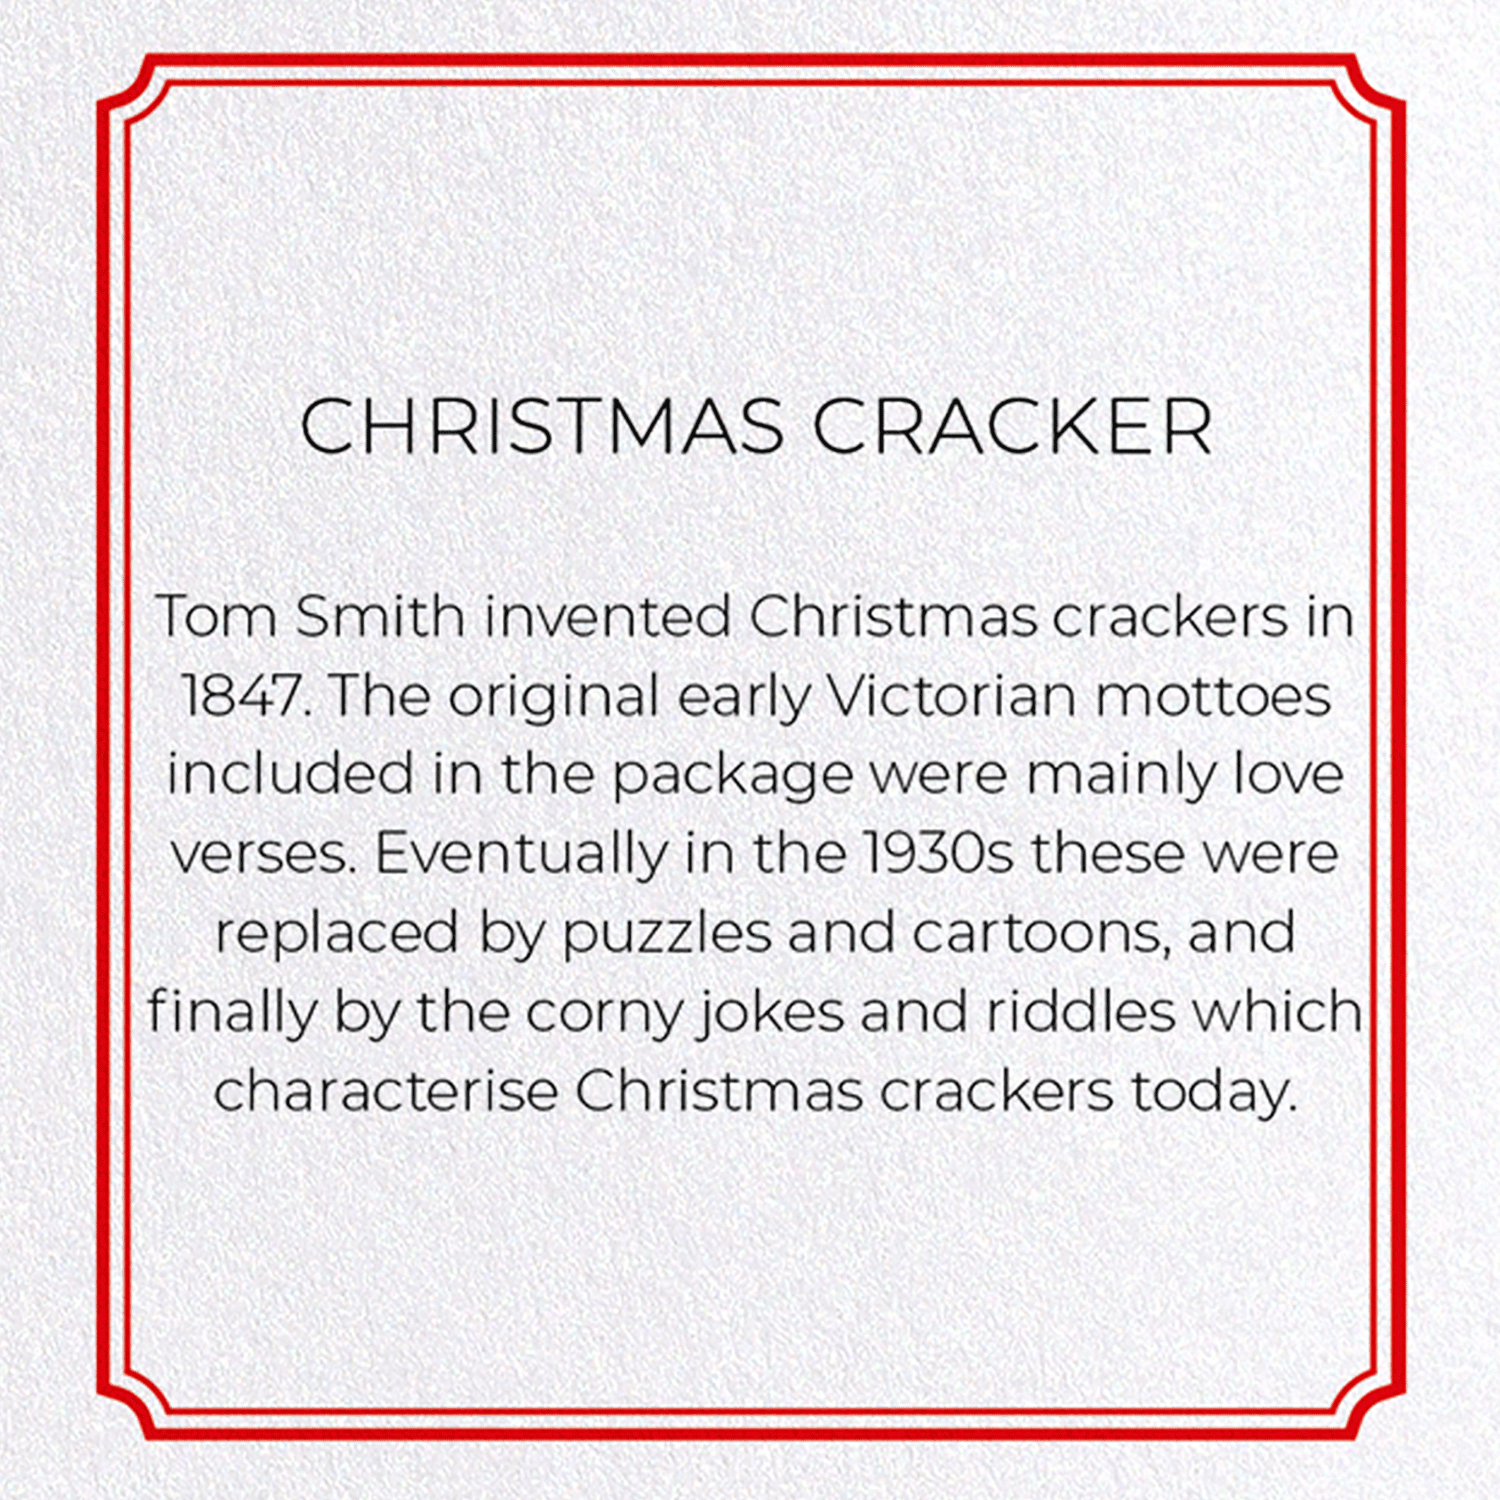 CHRISTMAS CRACKER